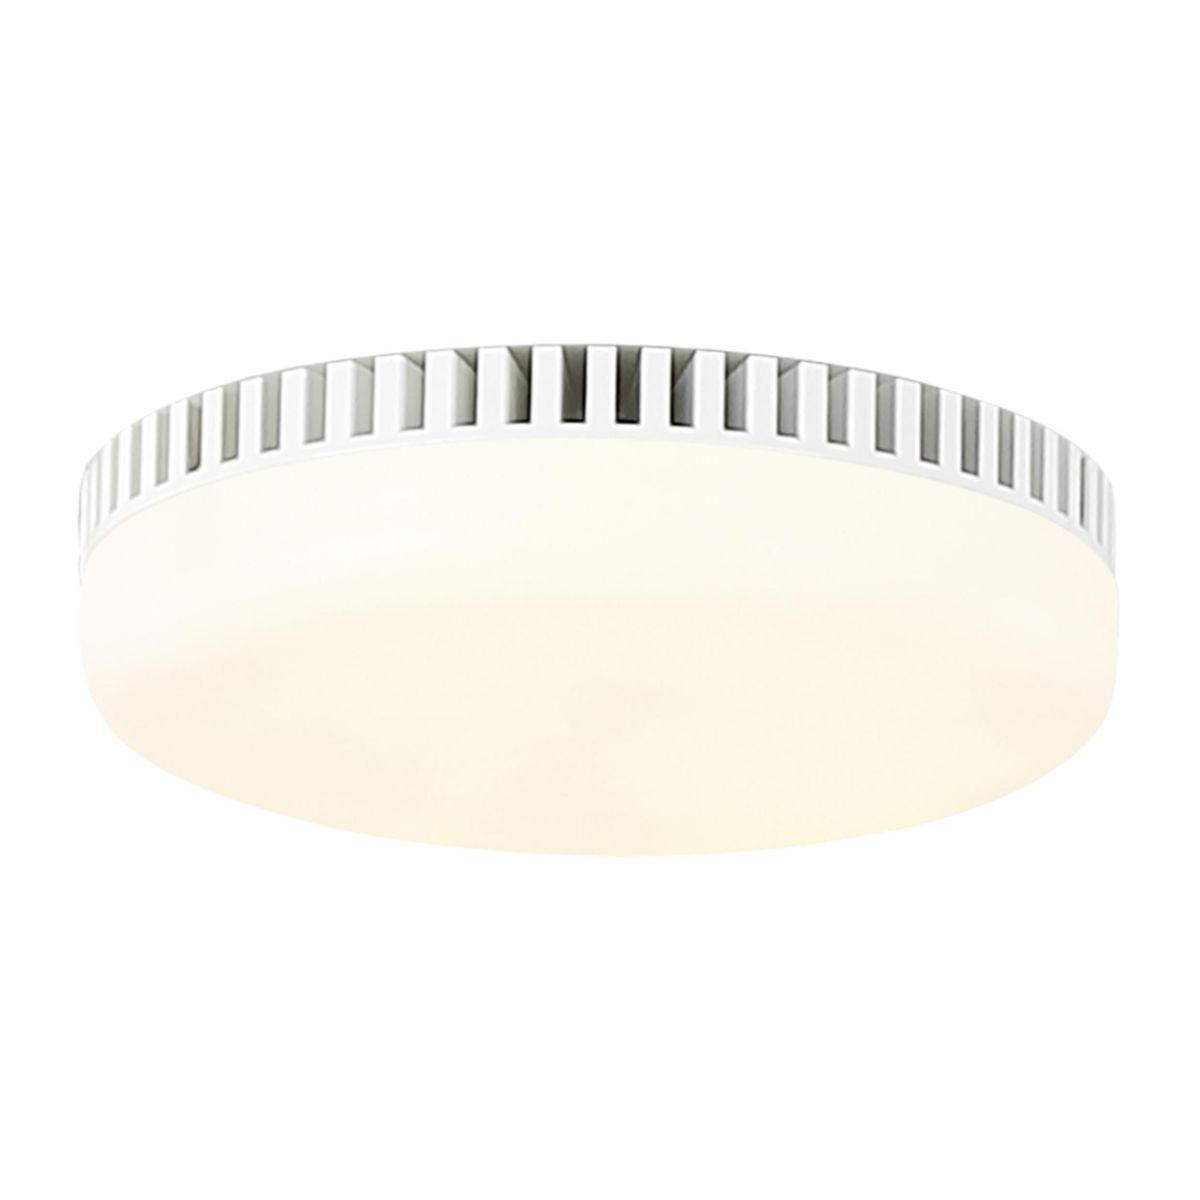 Universal LED Ceiling Fan Light Kit